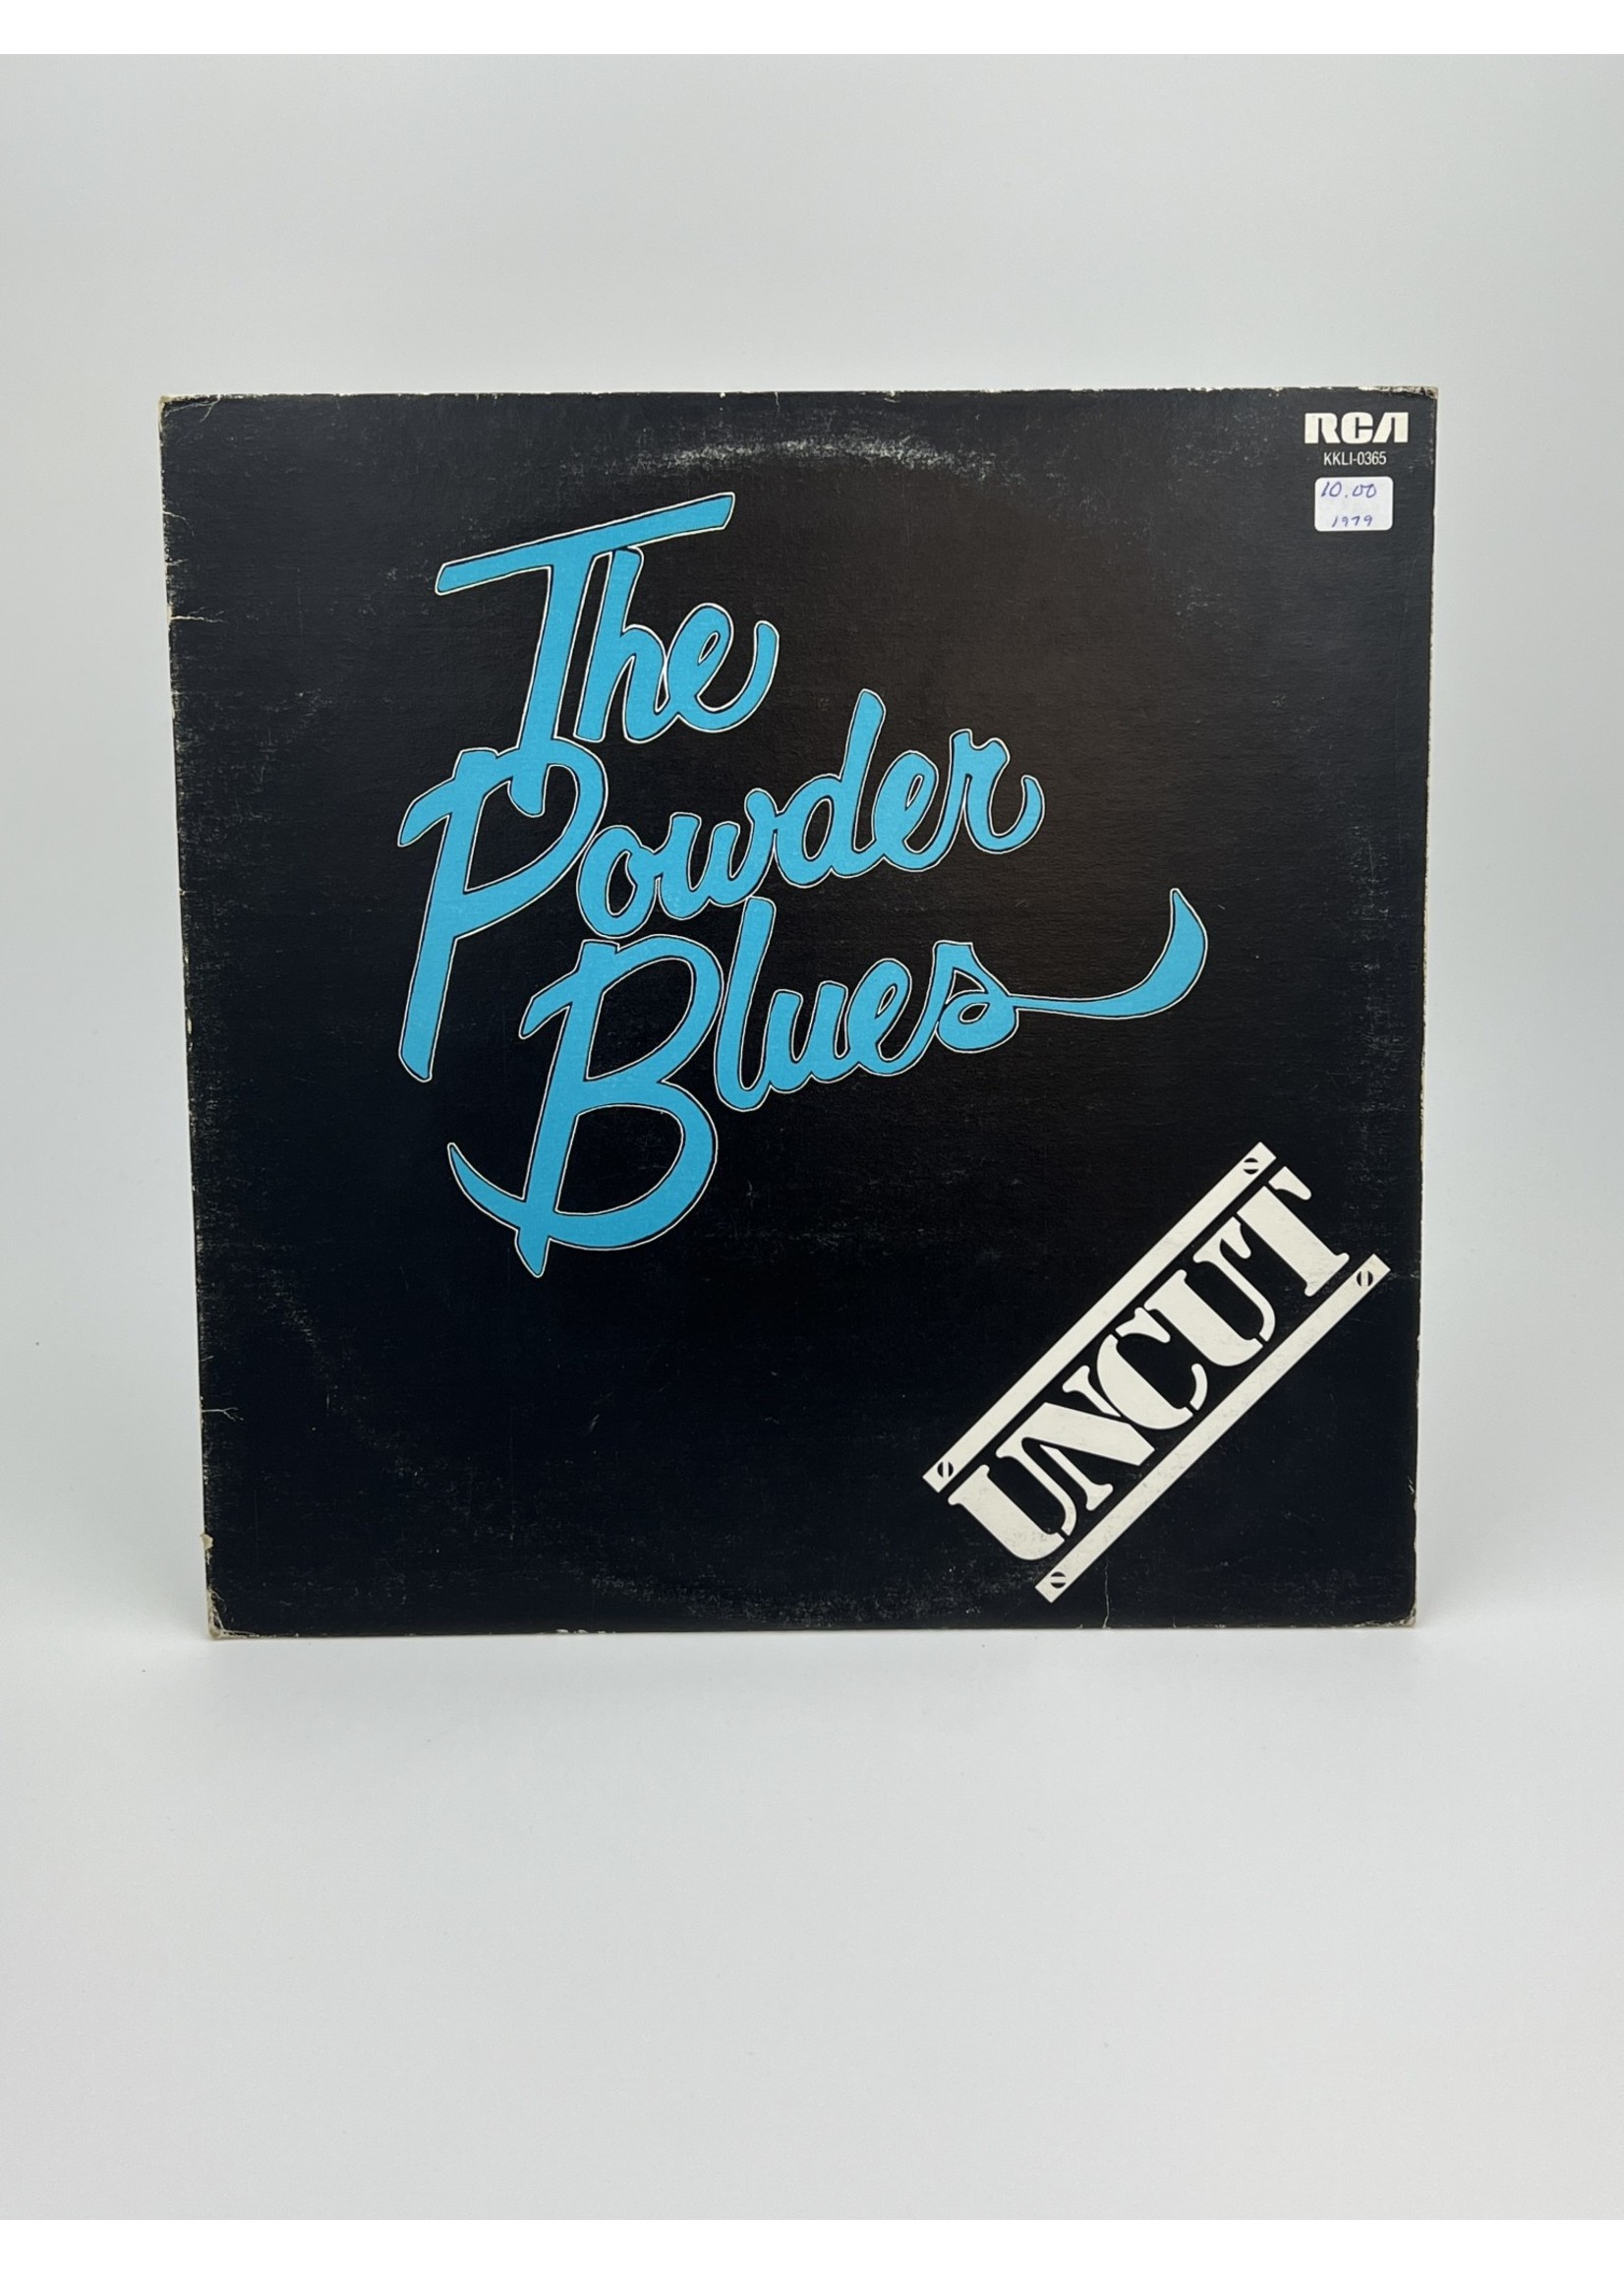 LP The Powder Blues Uncut LP Record